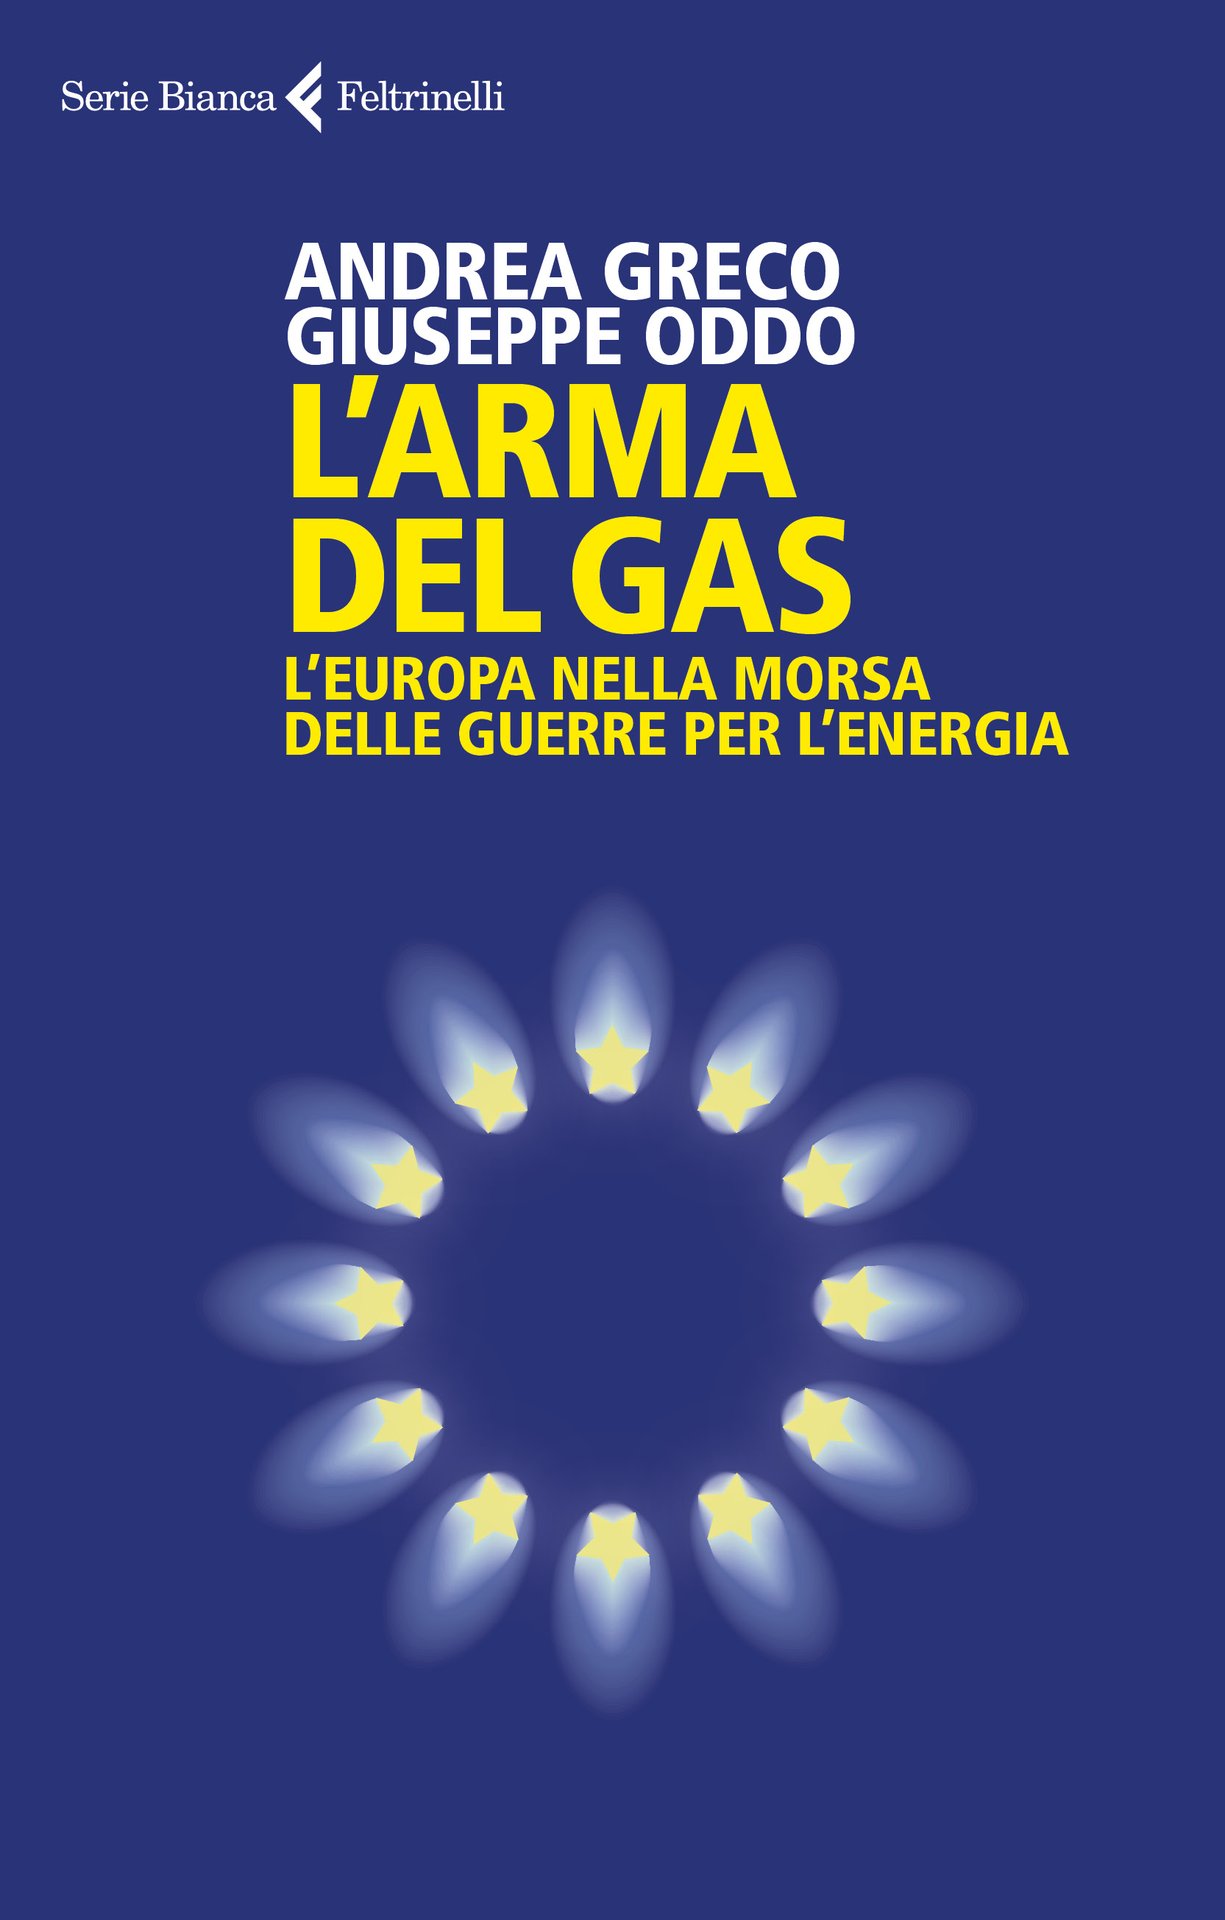 Giuseppe Oddo e Andrea Greco presentano "L'arma del gas" a Galbiate